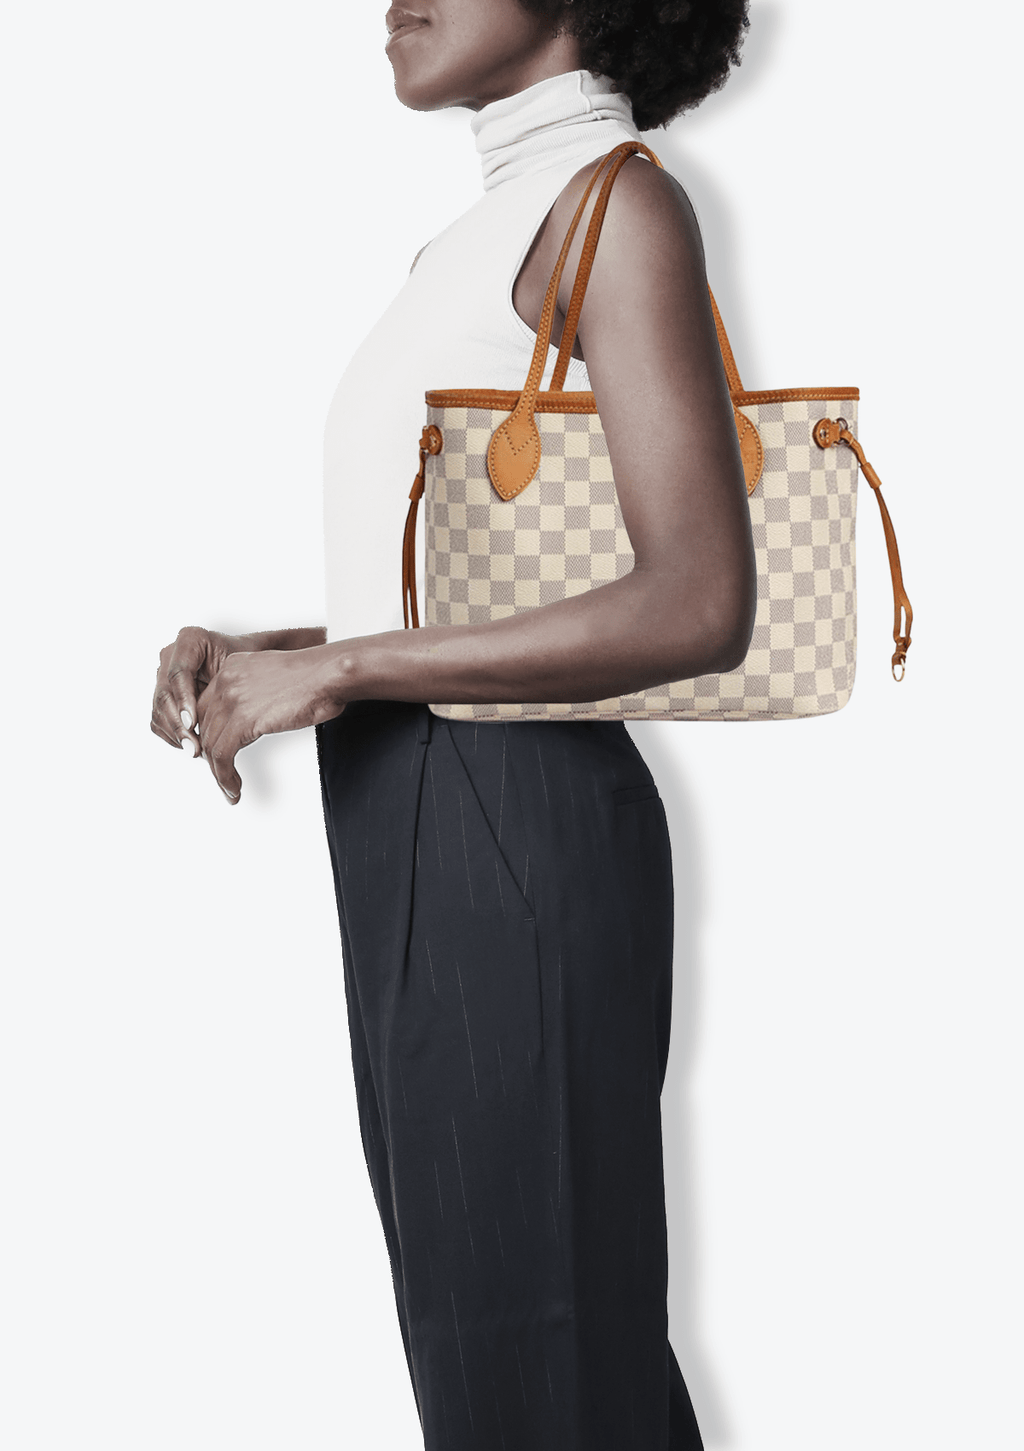 Authentic Louis Vuitton Damier Azur Neverfull PM Shoulder Tote Bag